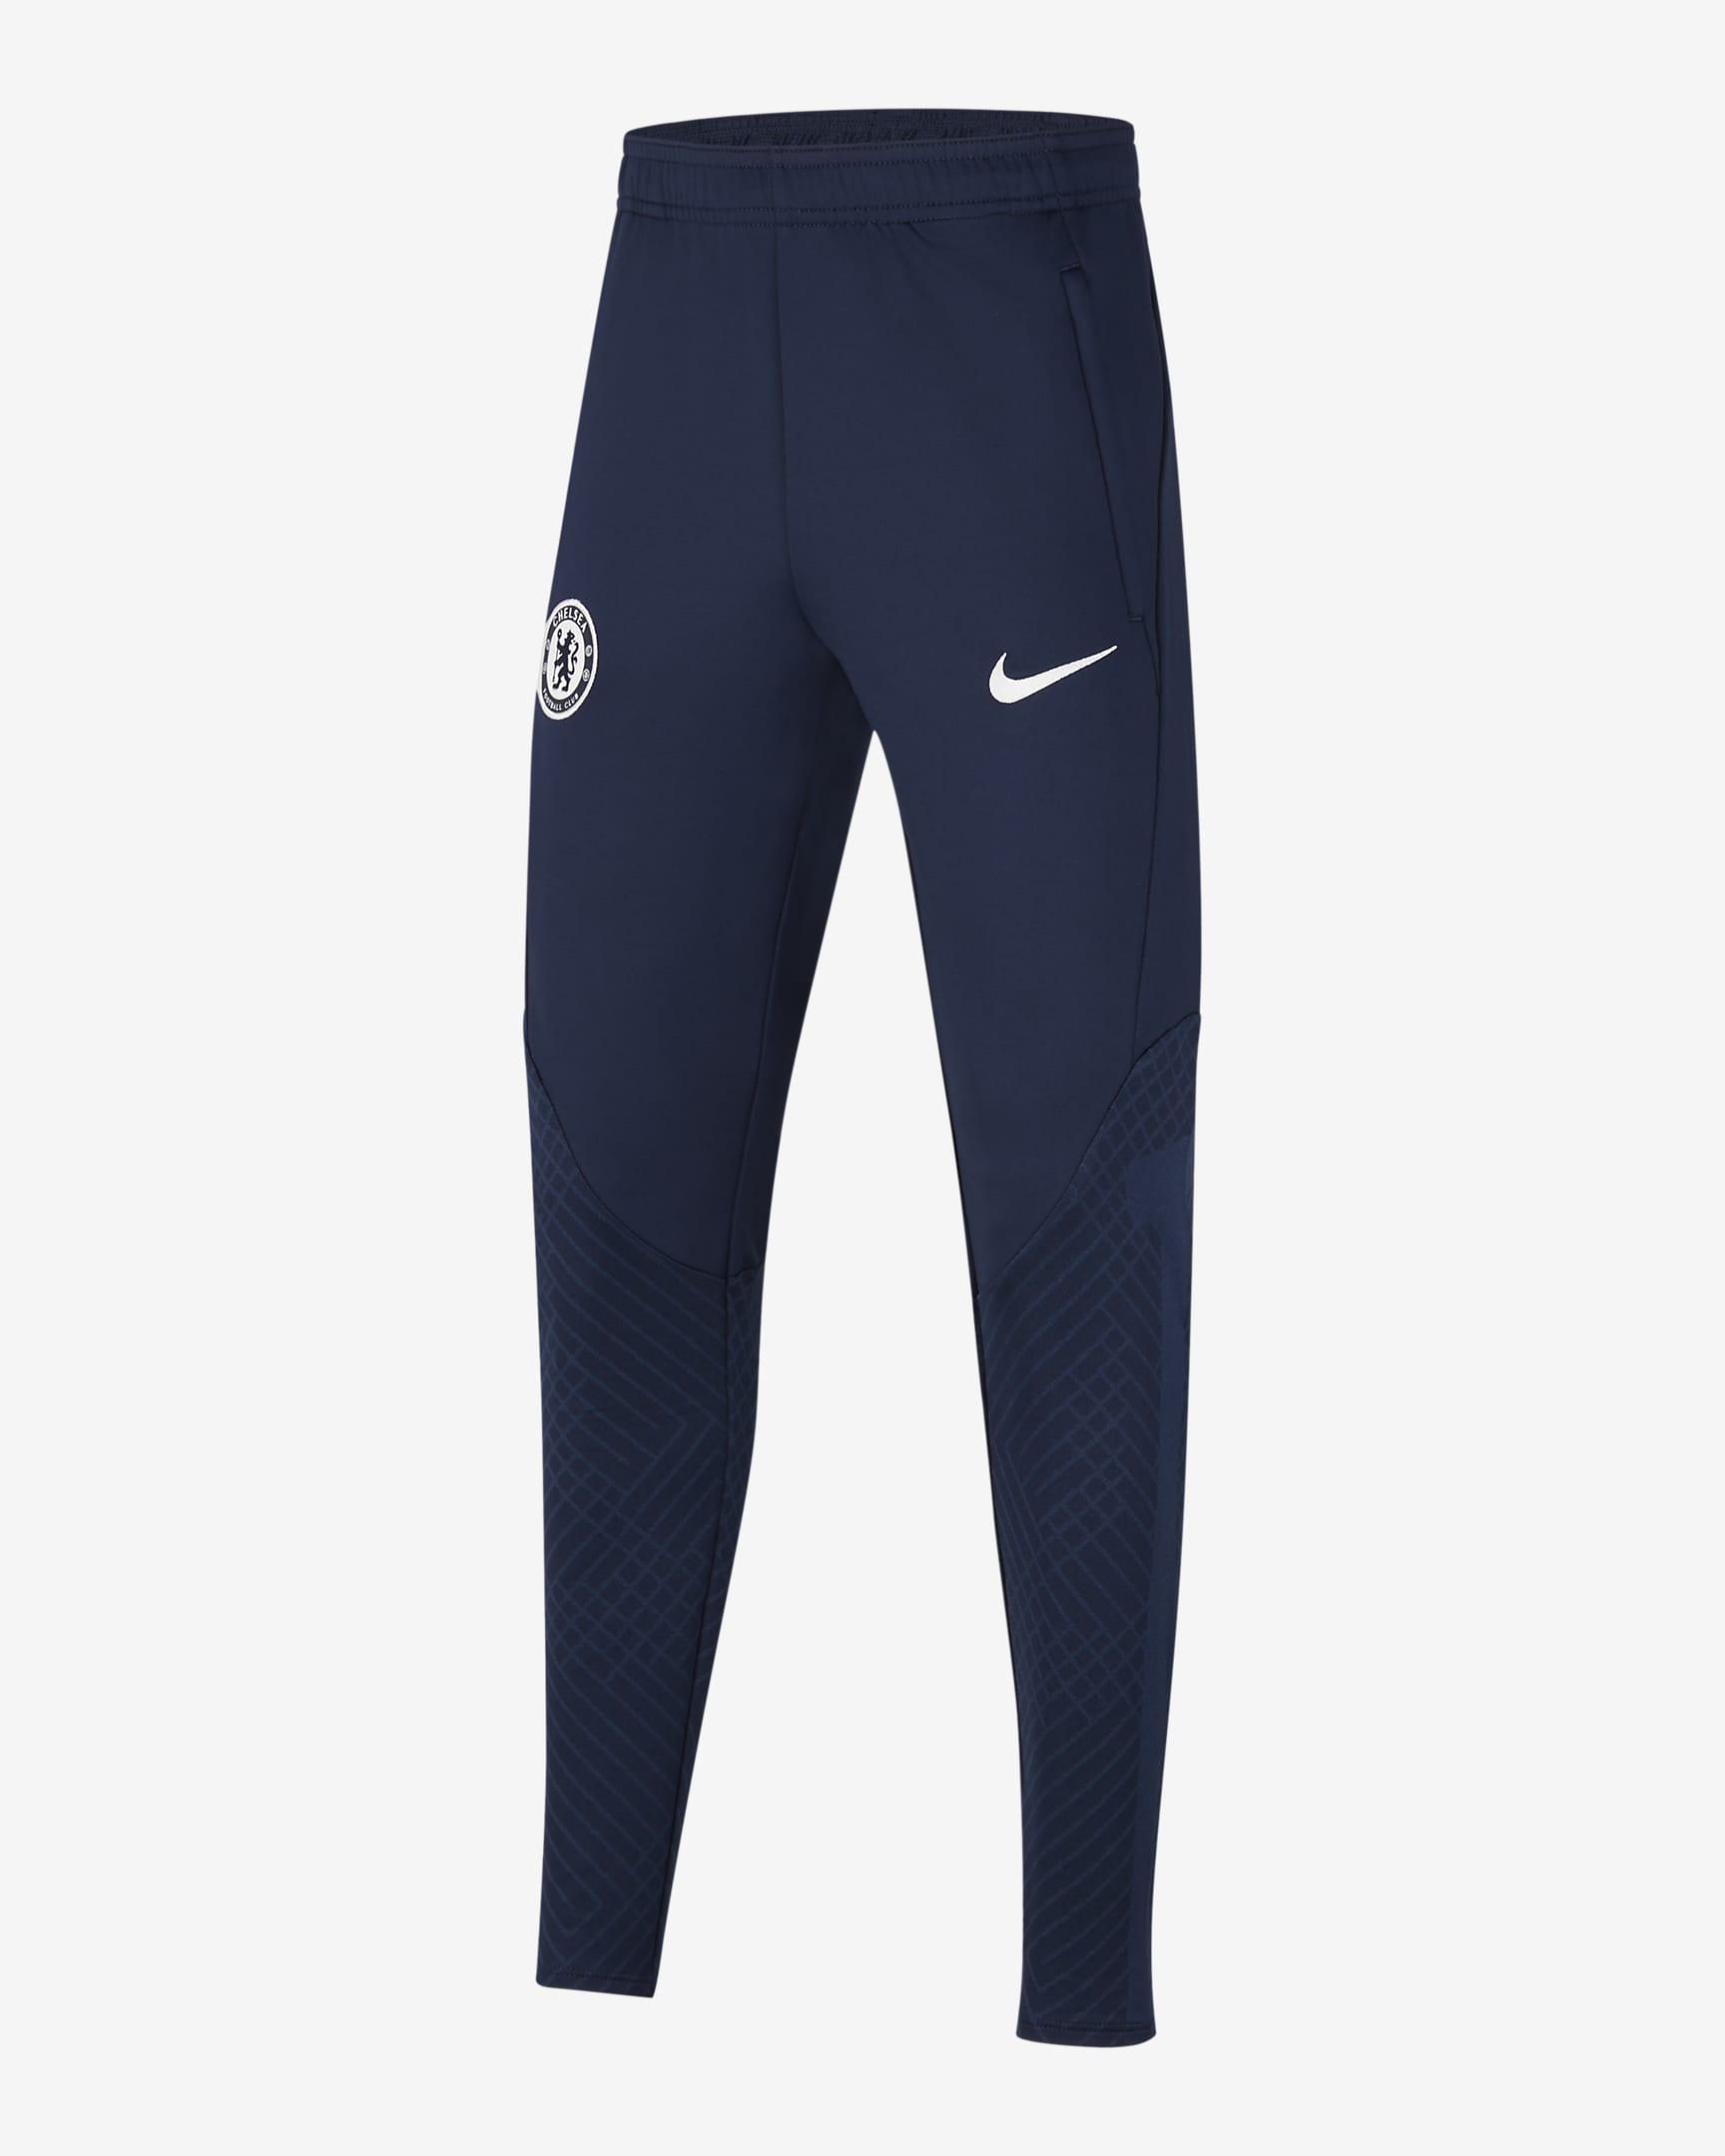 Chelsea F.C. Strike Older Kids' Nike Dri-FIT Football Pants. Nike IE